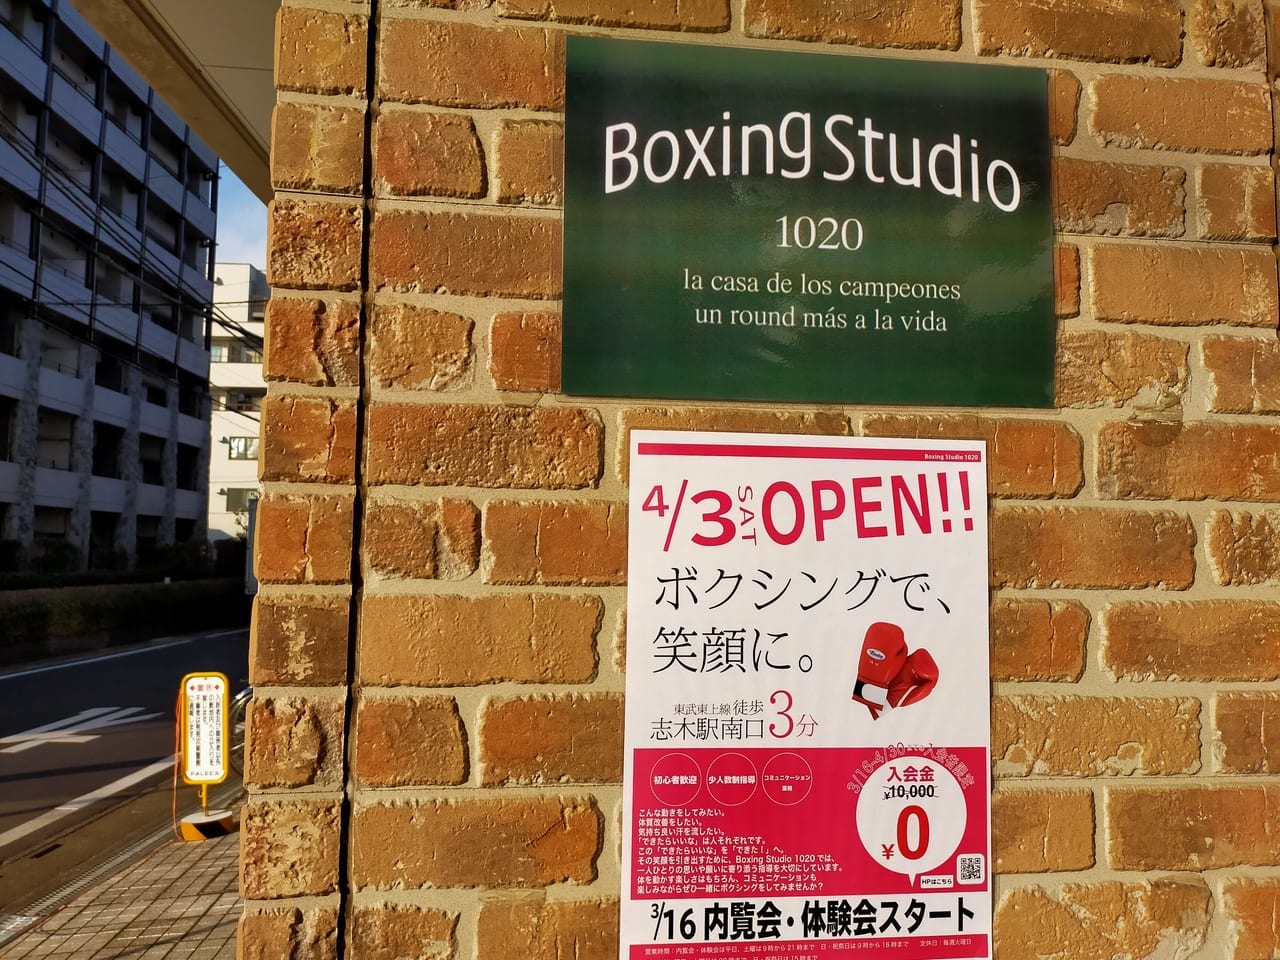 Boxing Studio 1020